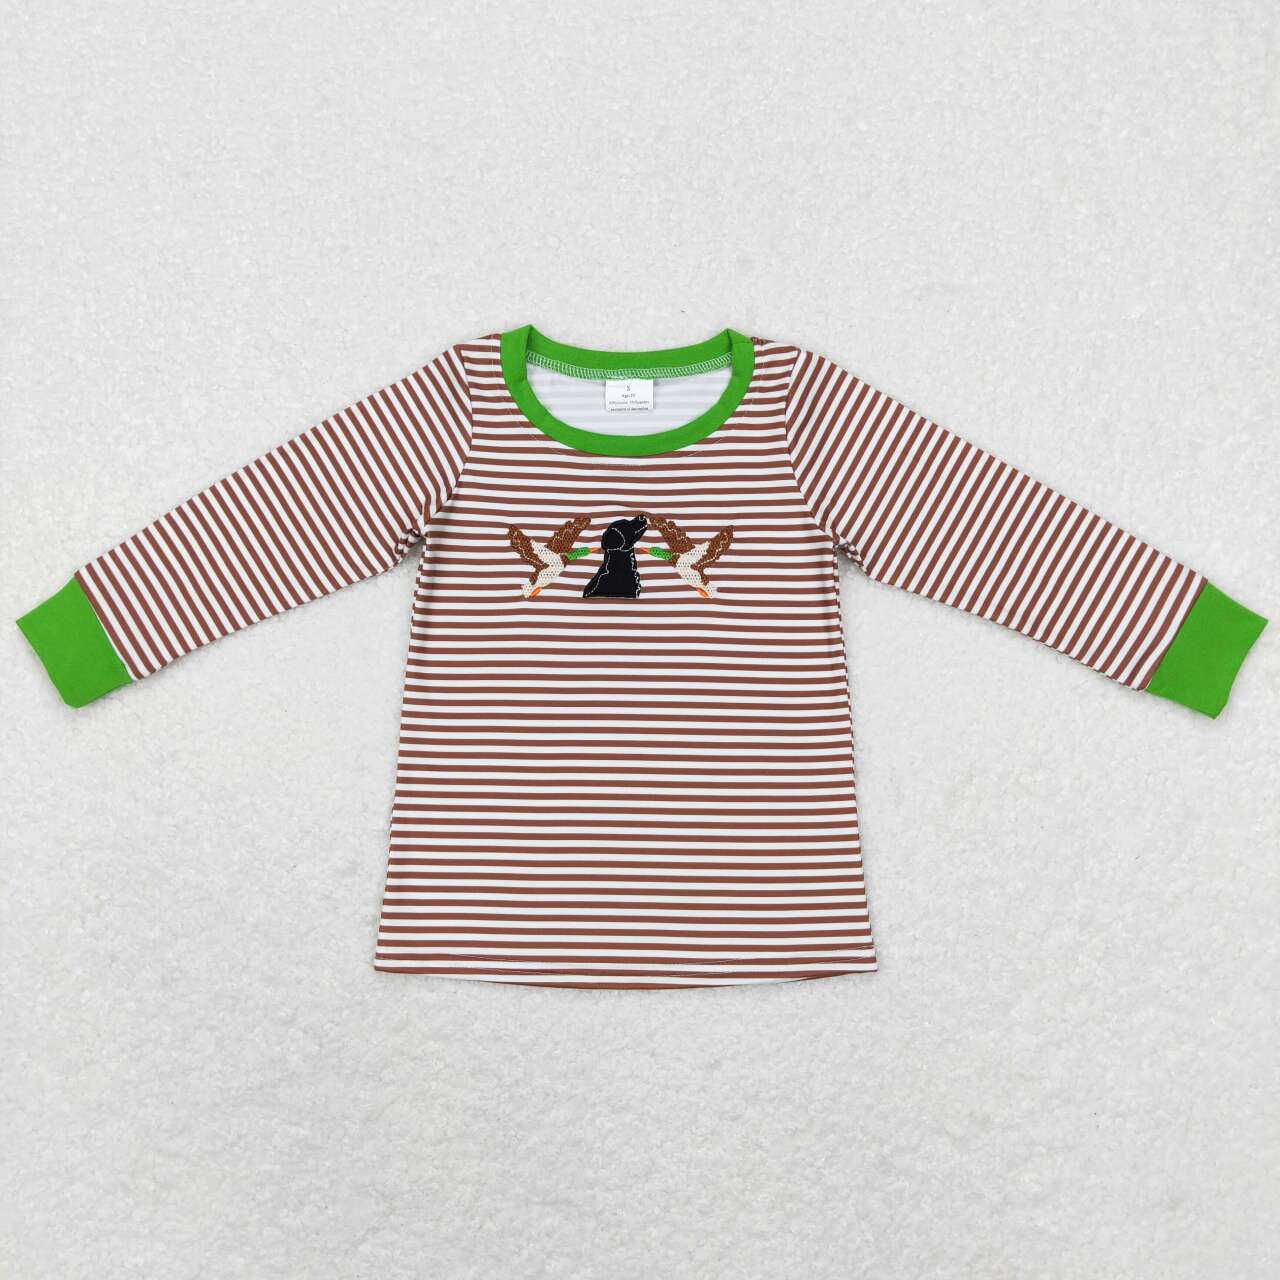 BT0419 kids clothes boys mallard duck embroidery boy winter top shirt